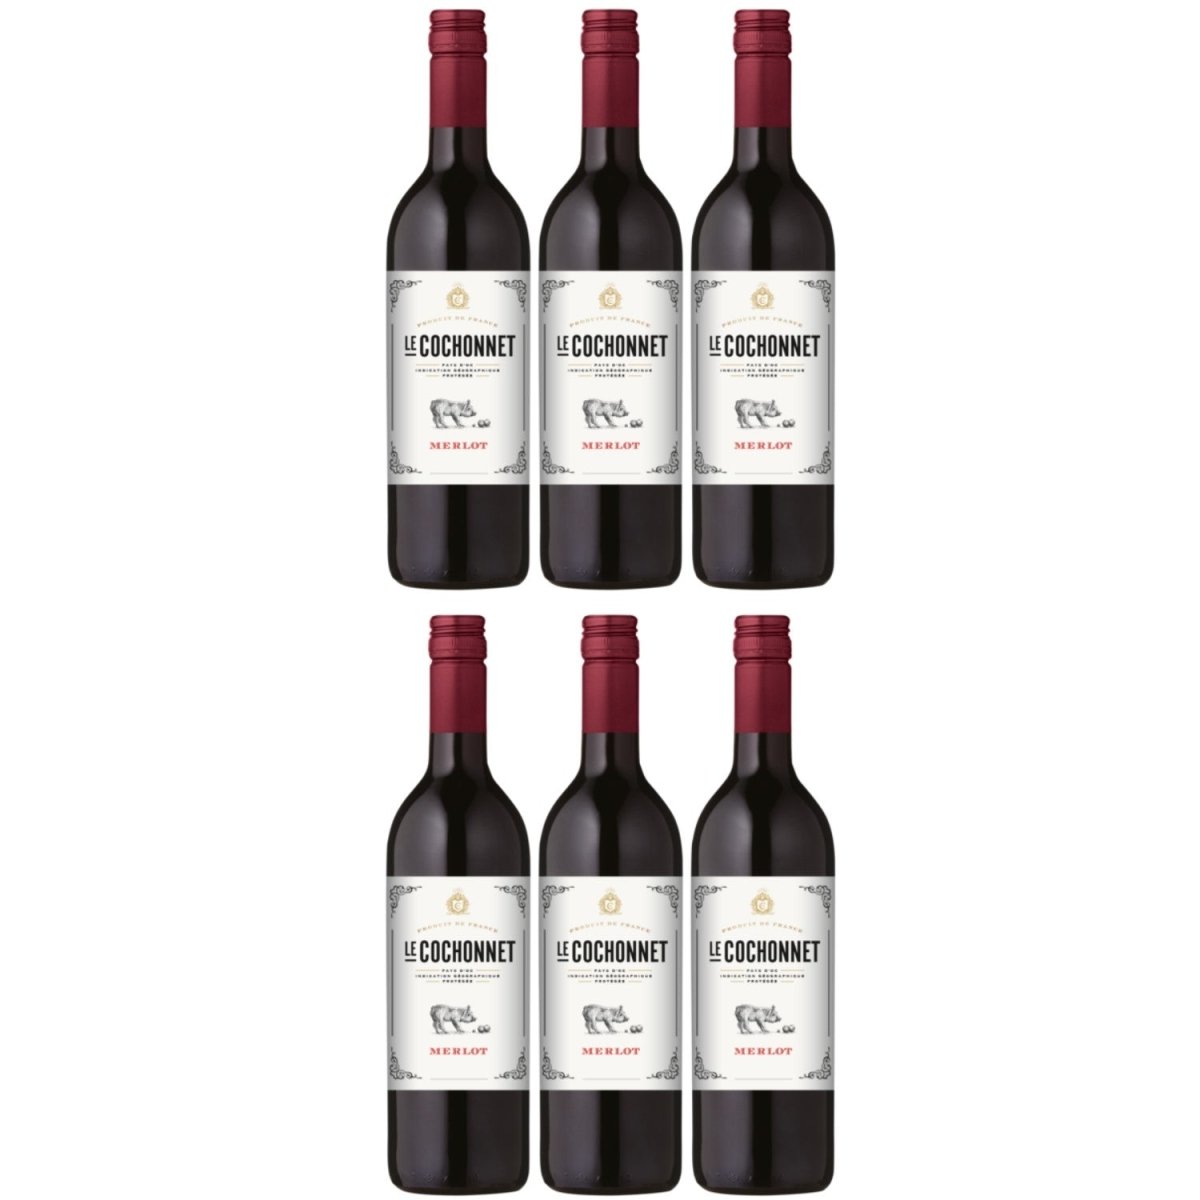 Le Cochonnet Merlot Pays d'Oc dry red wine IGP France (6 x 1.0l) – Versanel